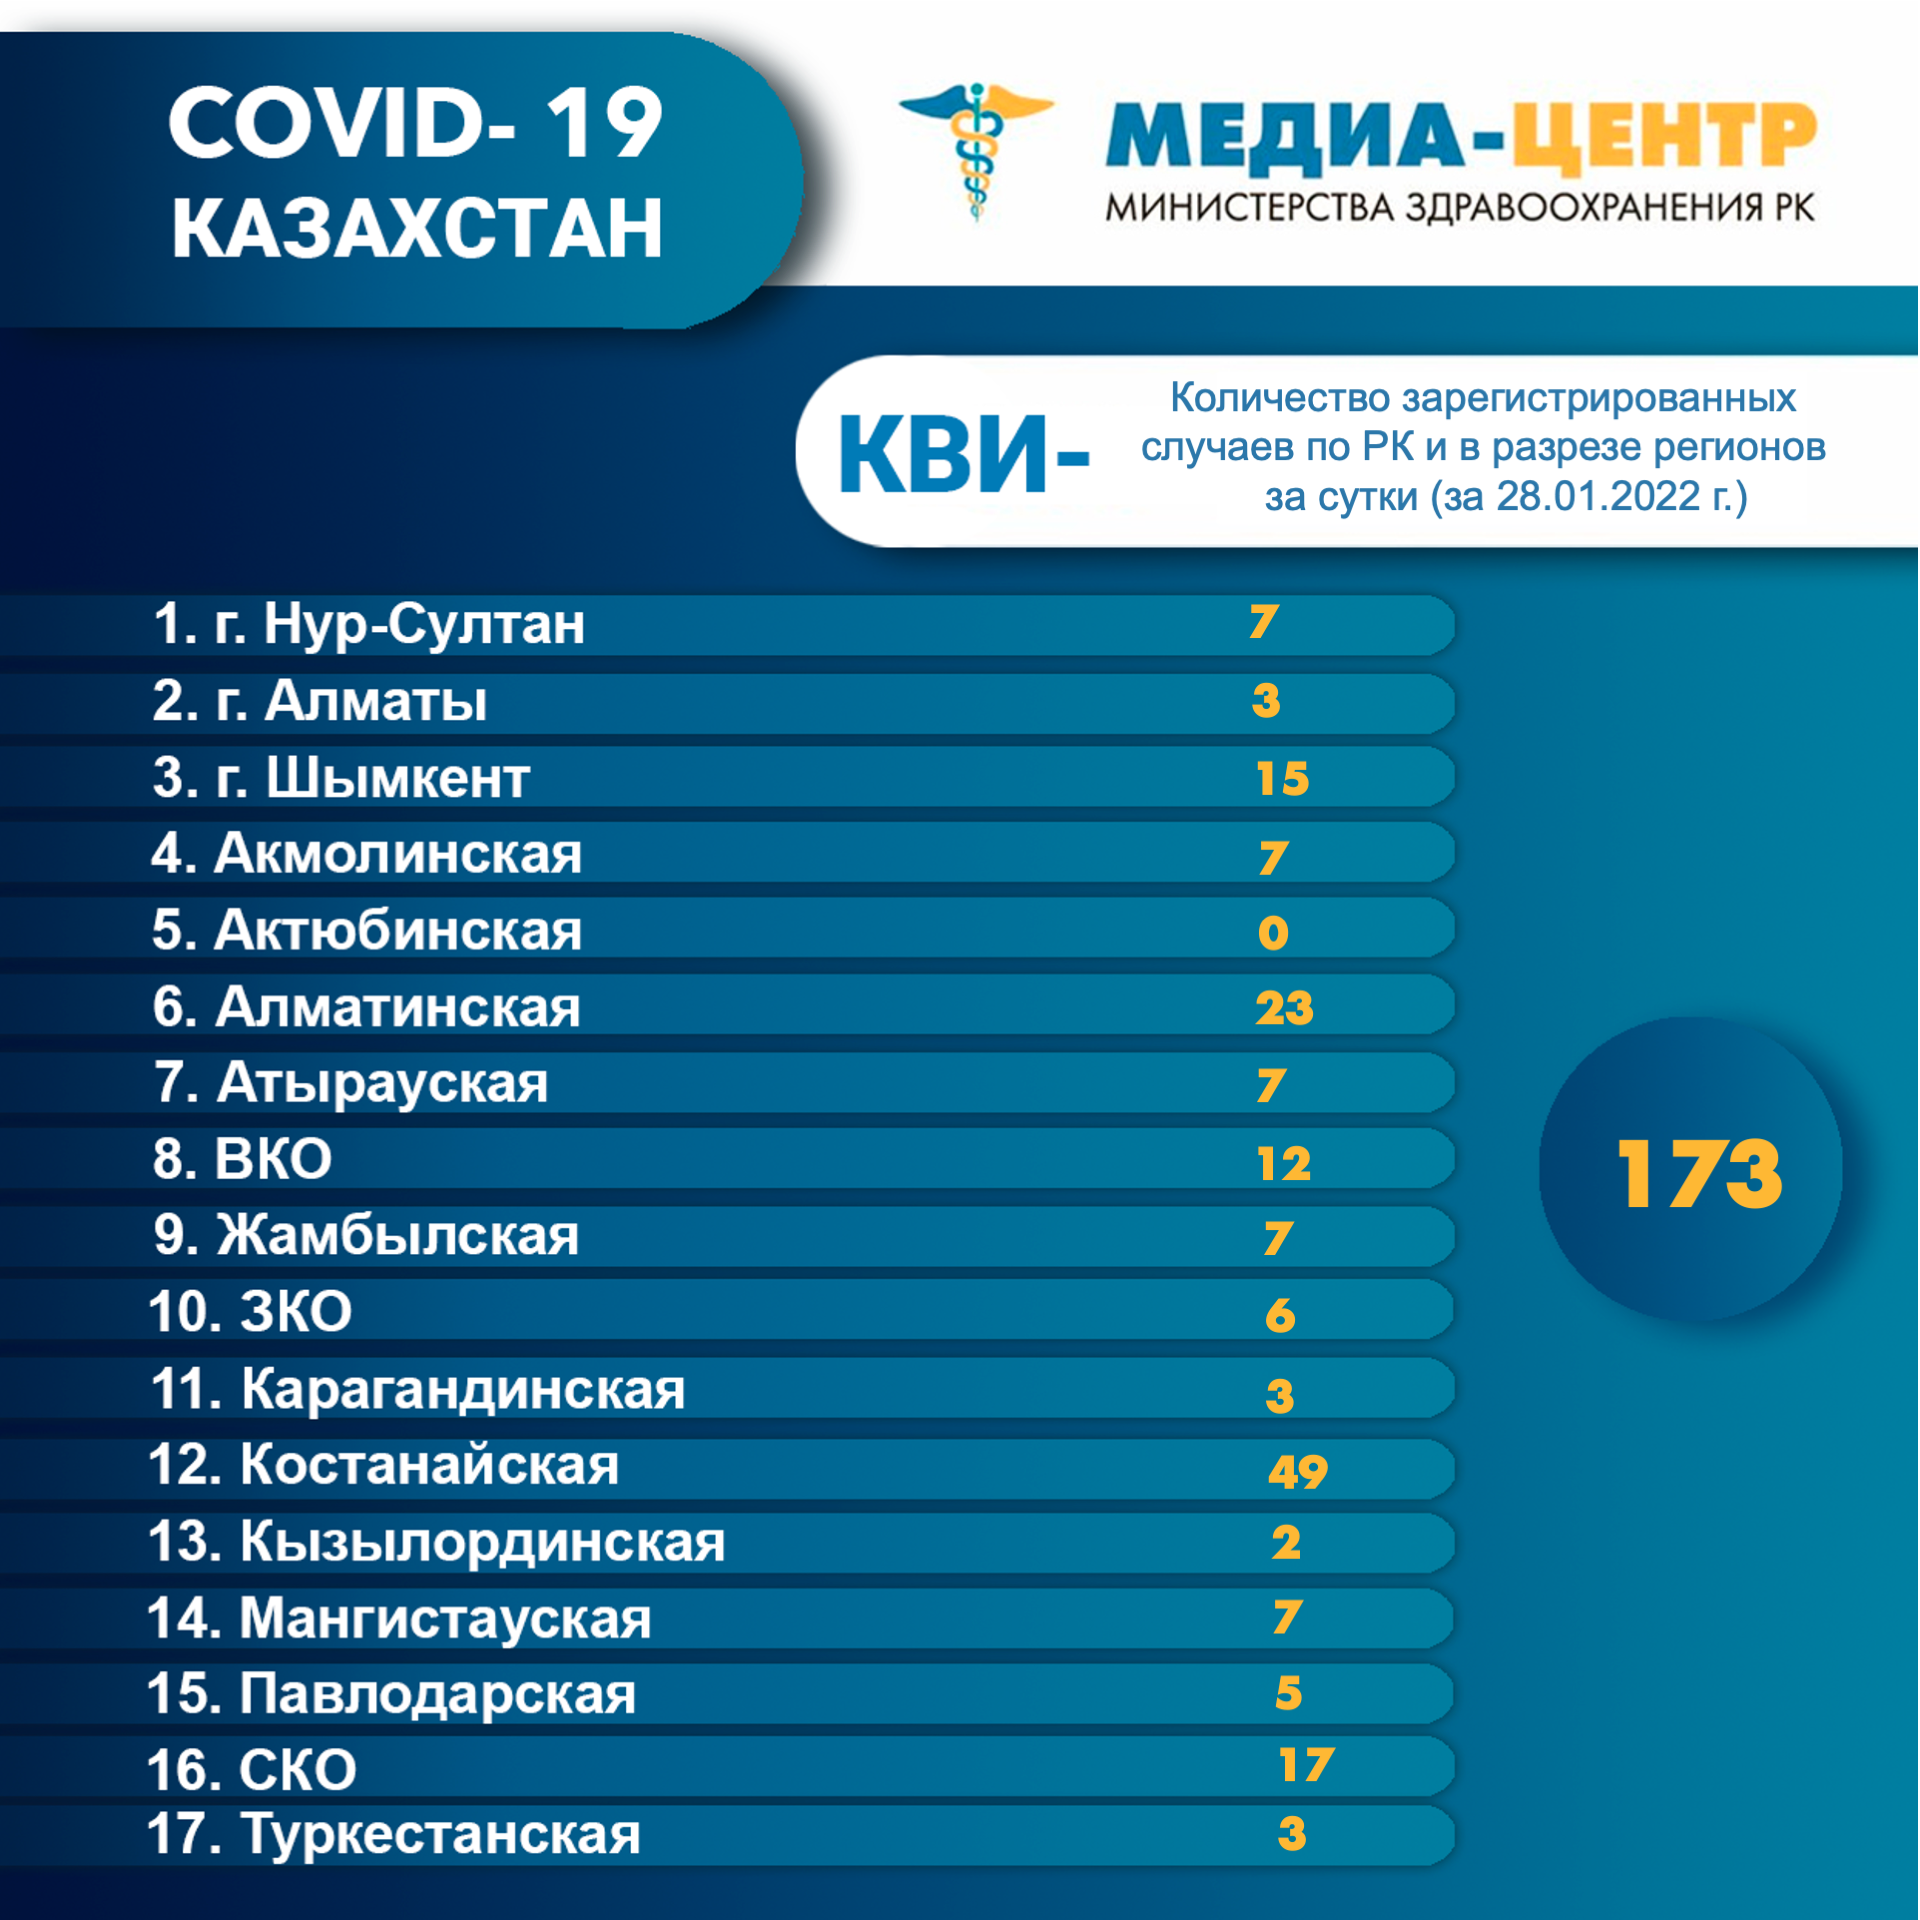 Количество зарегистрированных случаев КВИ- по РК и в разрезе регионов за сутки (28.01.2022 г.)